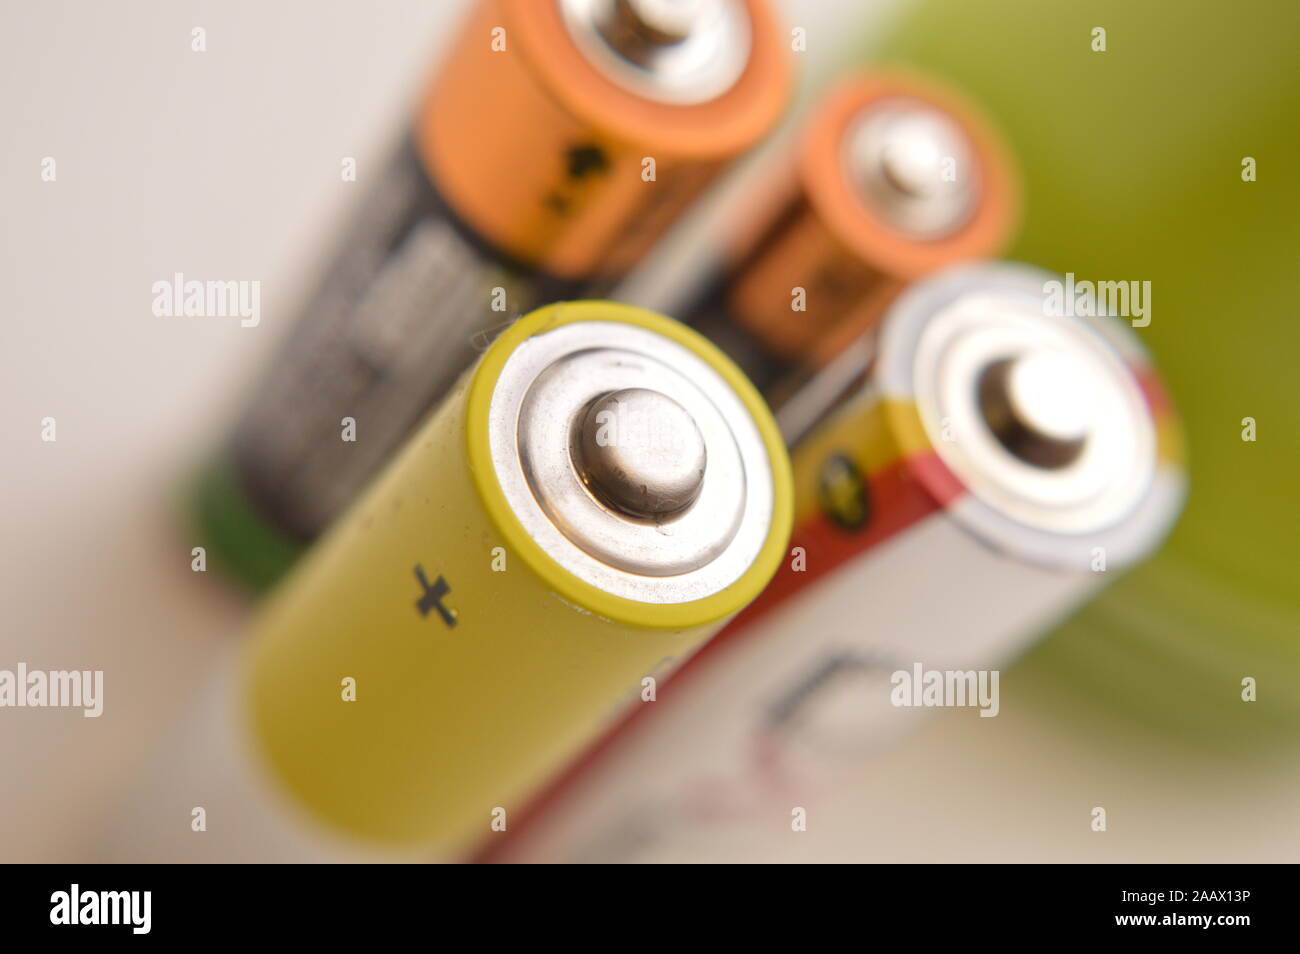 alimentazione a batteria per foto macro di oggetti elettronICI Stock Photo  - Alamy